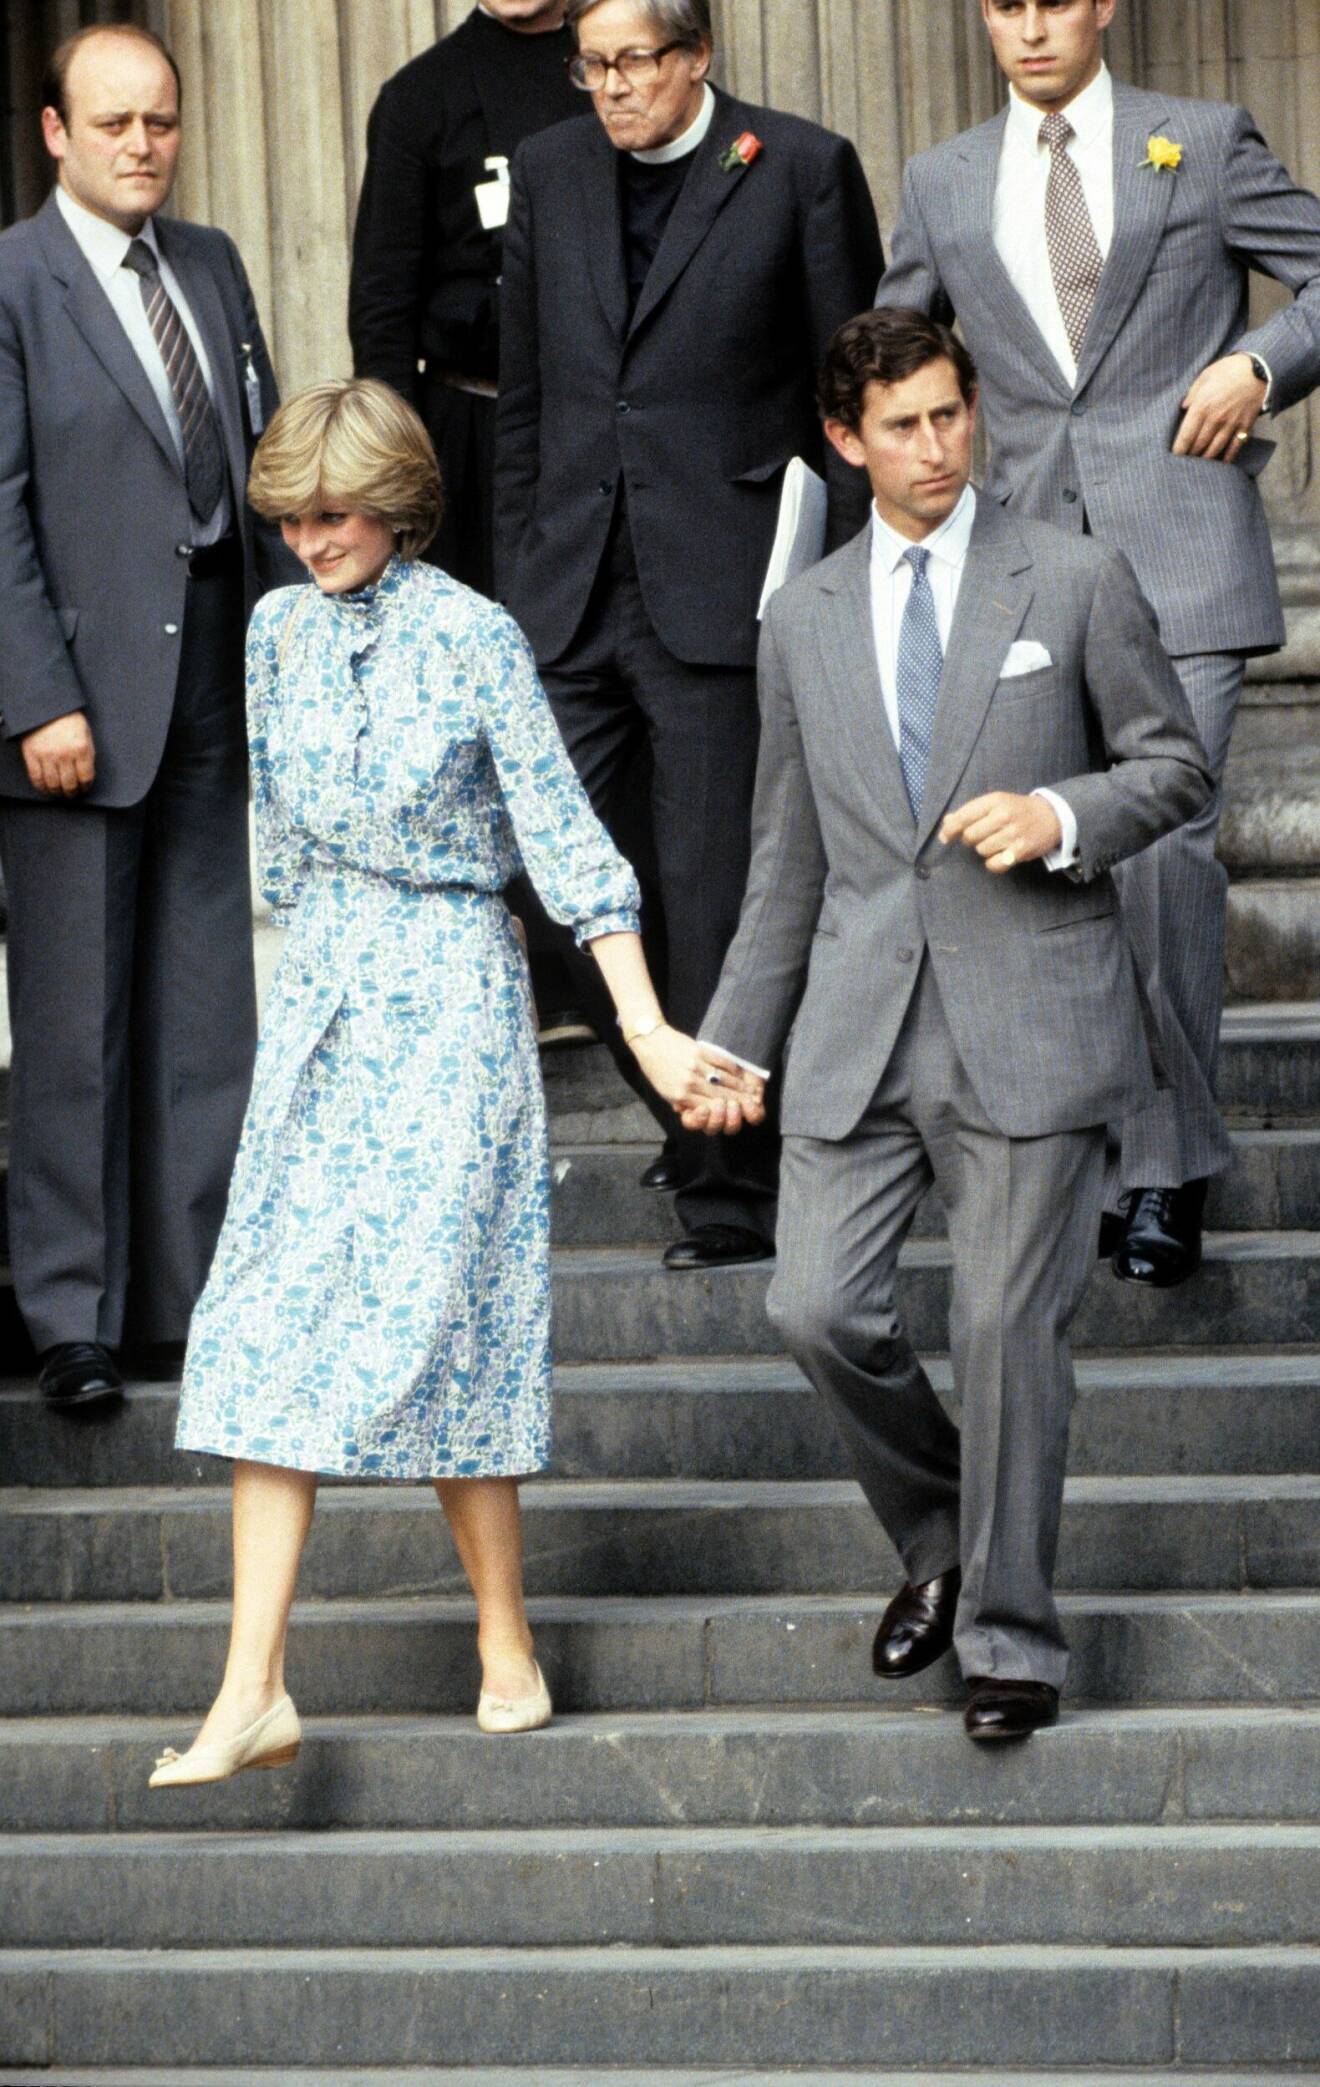 Diana på väg till parets rehearsal dinner dagen innan hon gifte sig och blev prinsessa.